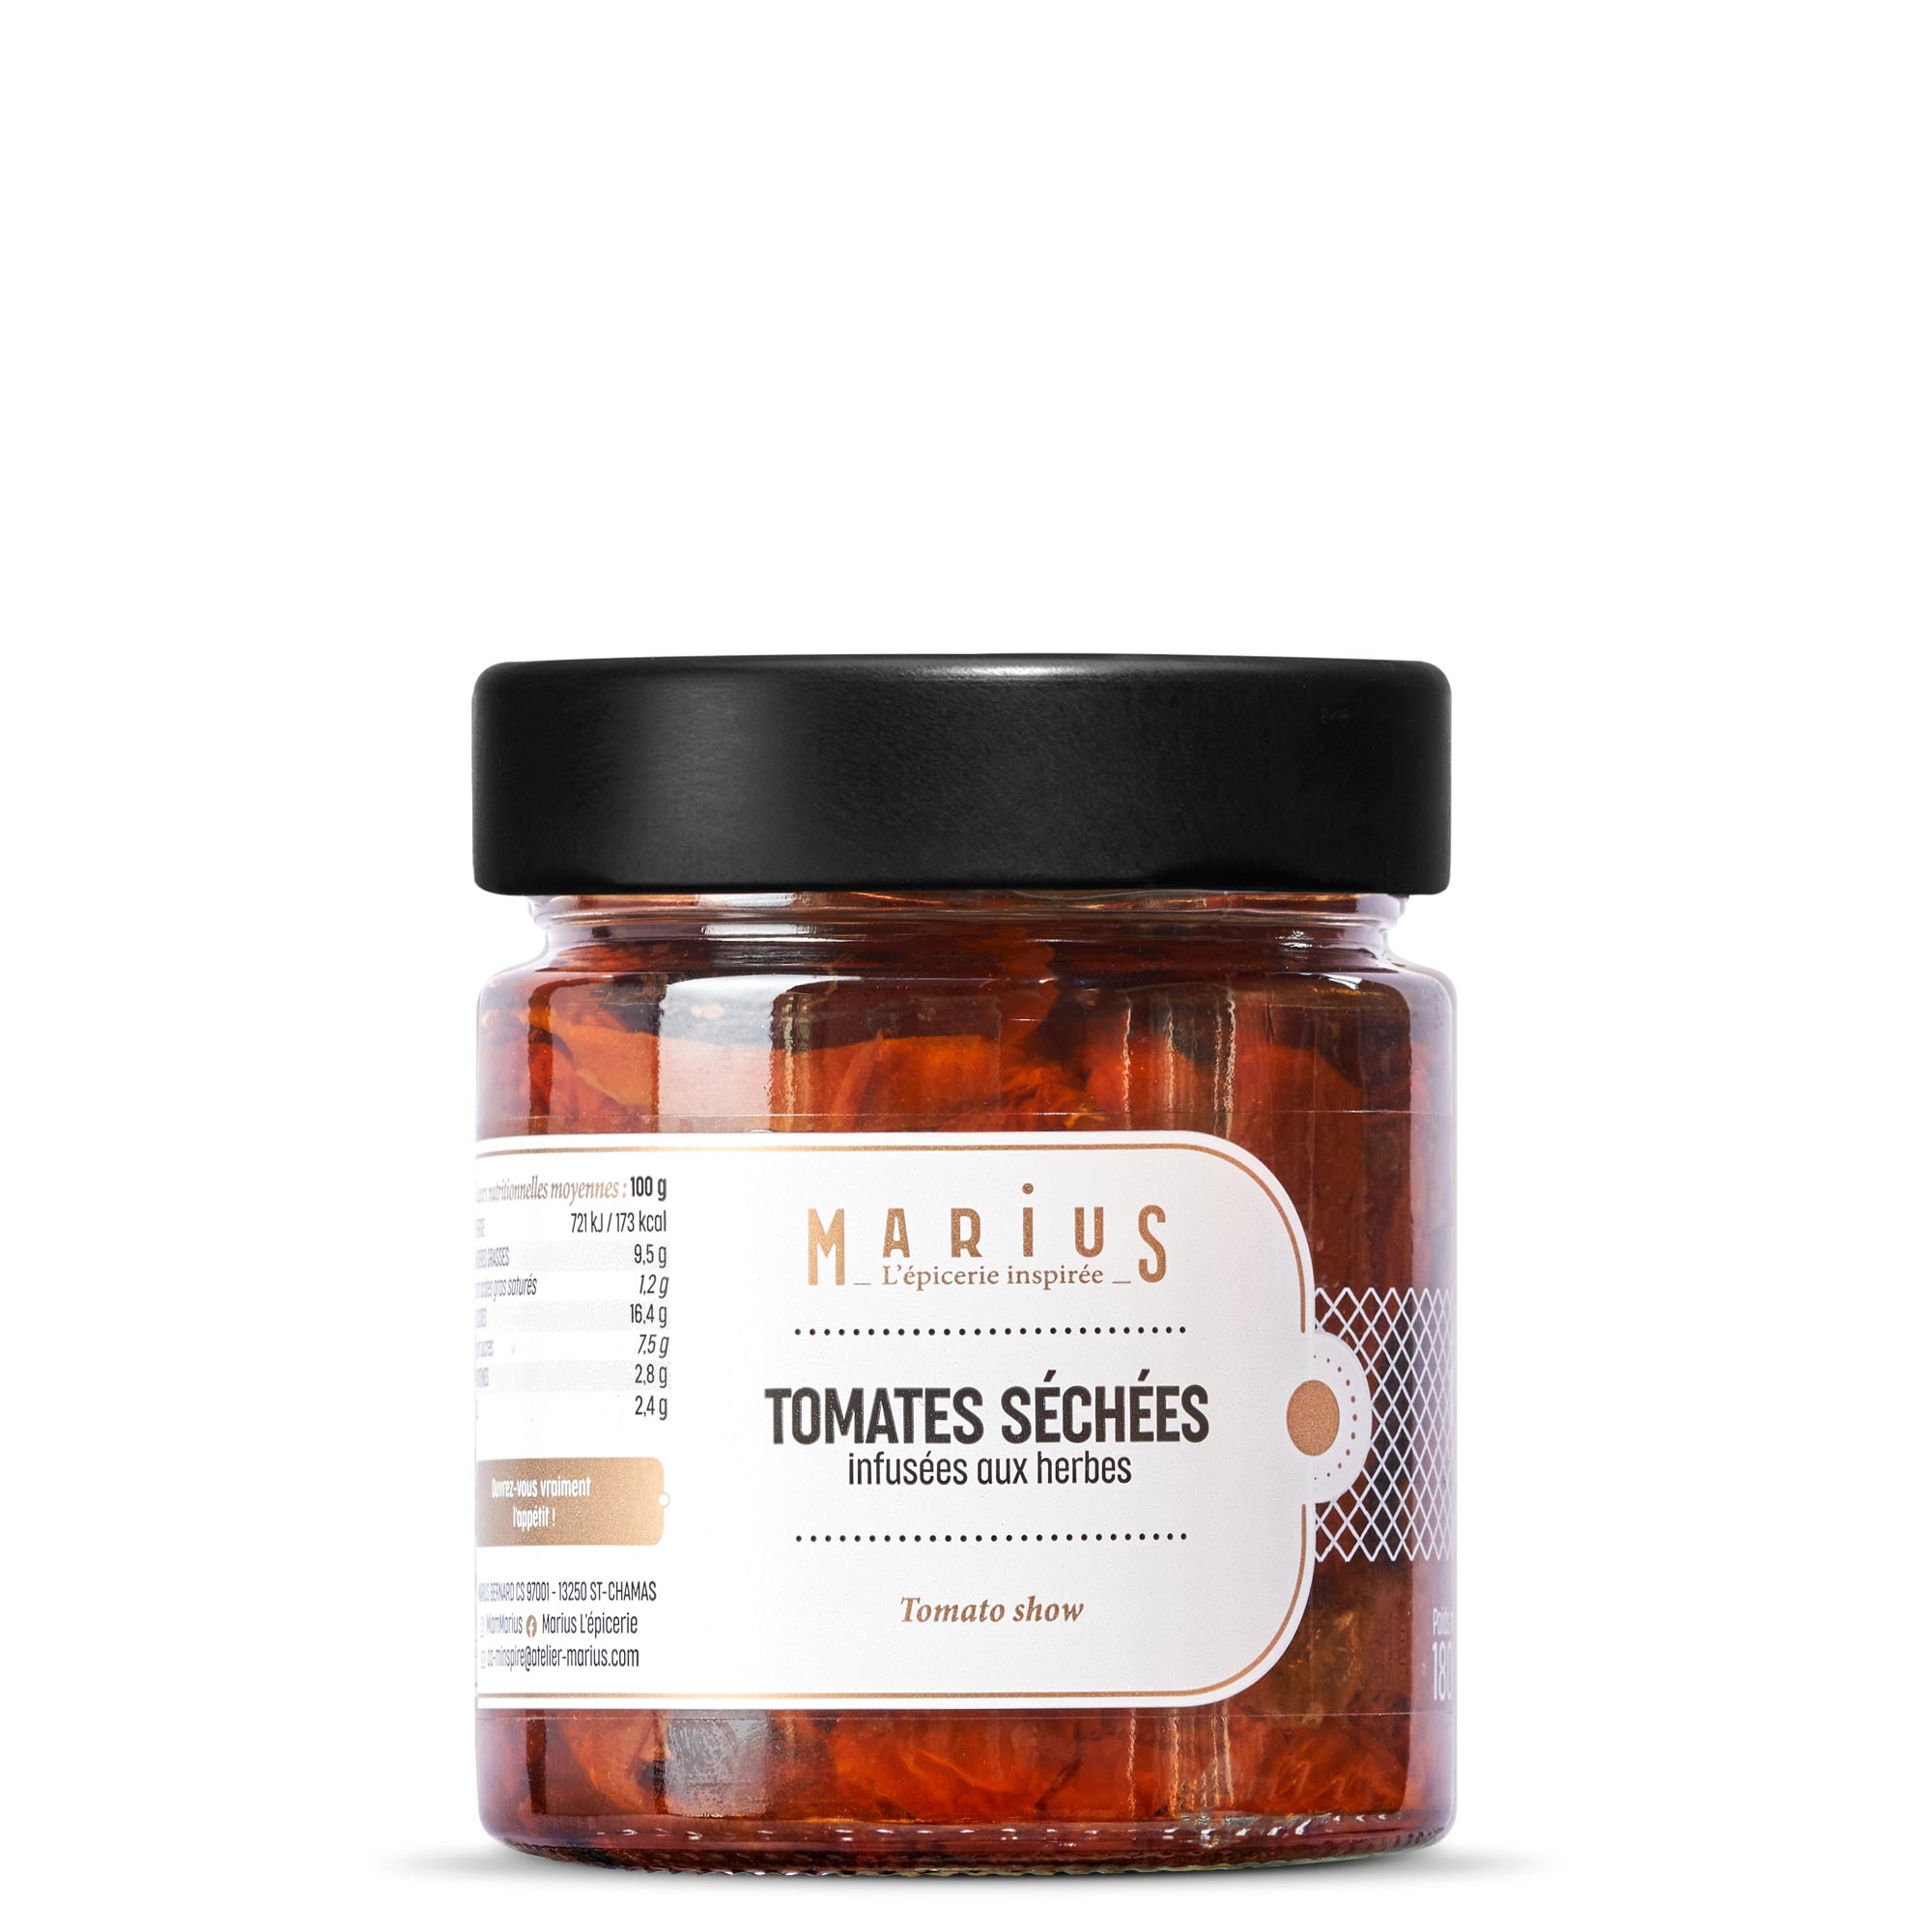 https://www.atelier-marius.com/wp-content/uploads/2019/08/MARIUS-tomates-sechees_face.jpg